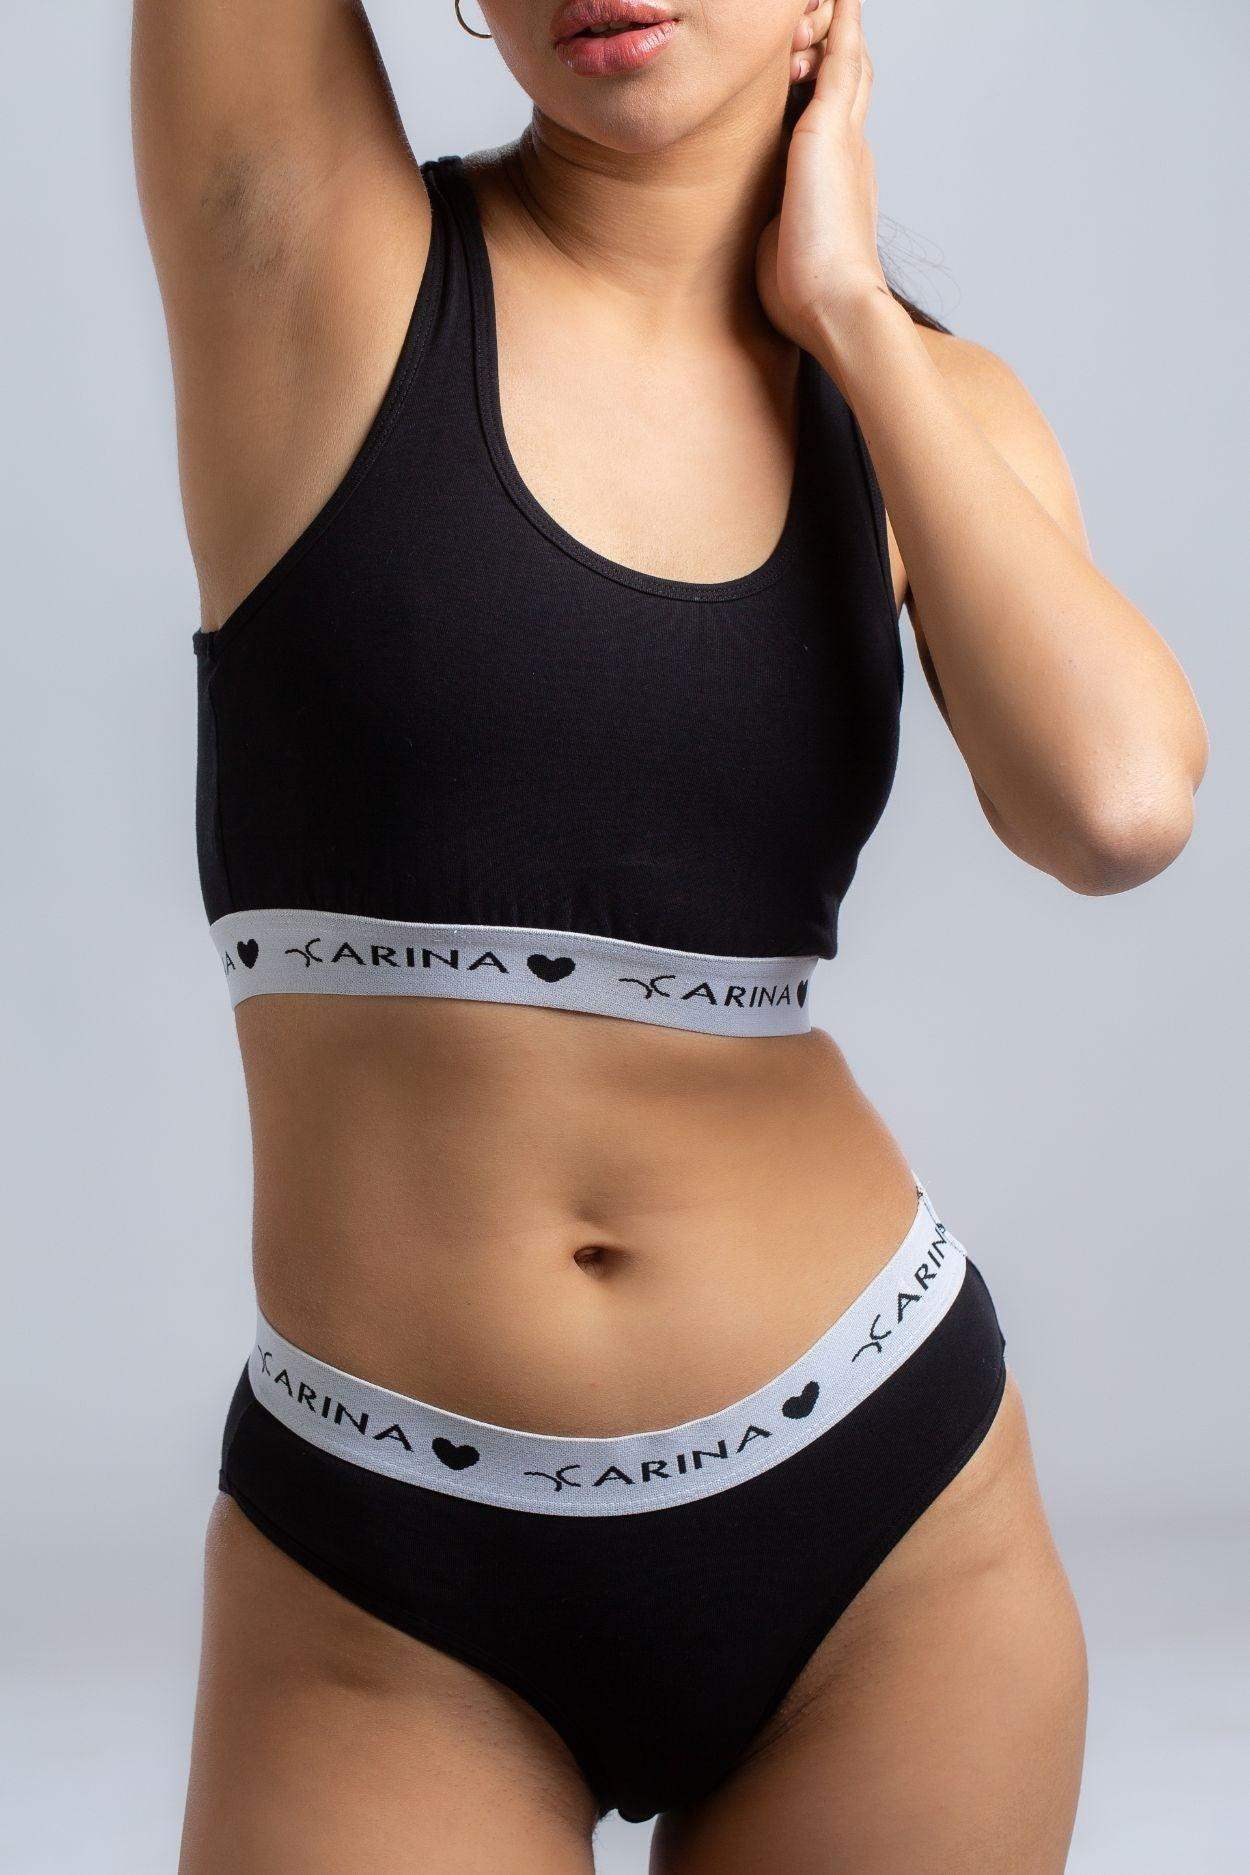 Sportswear underwear by Calvin Klein, by Marina